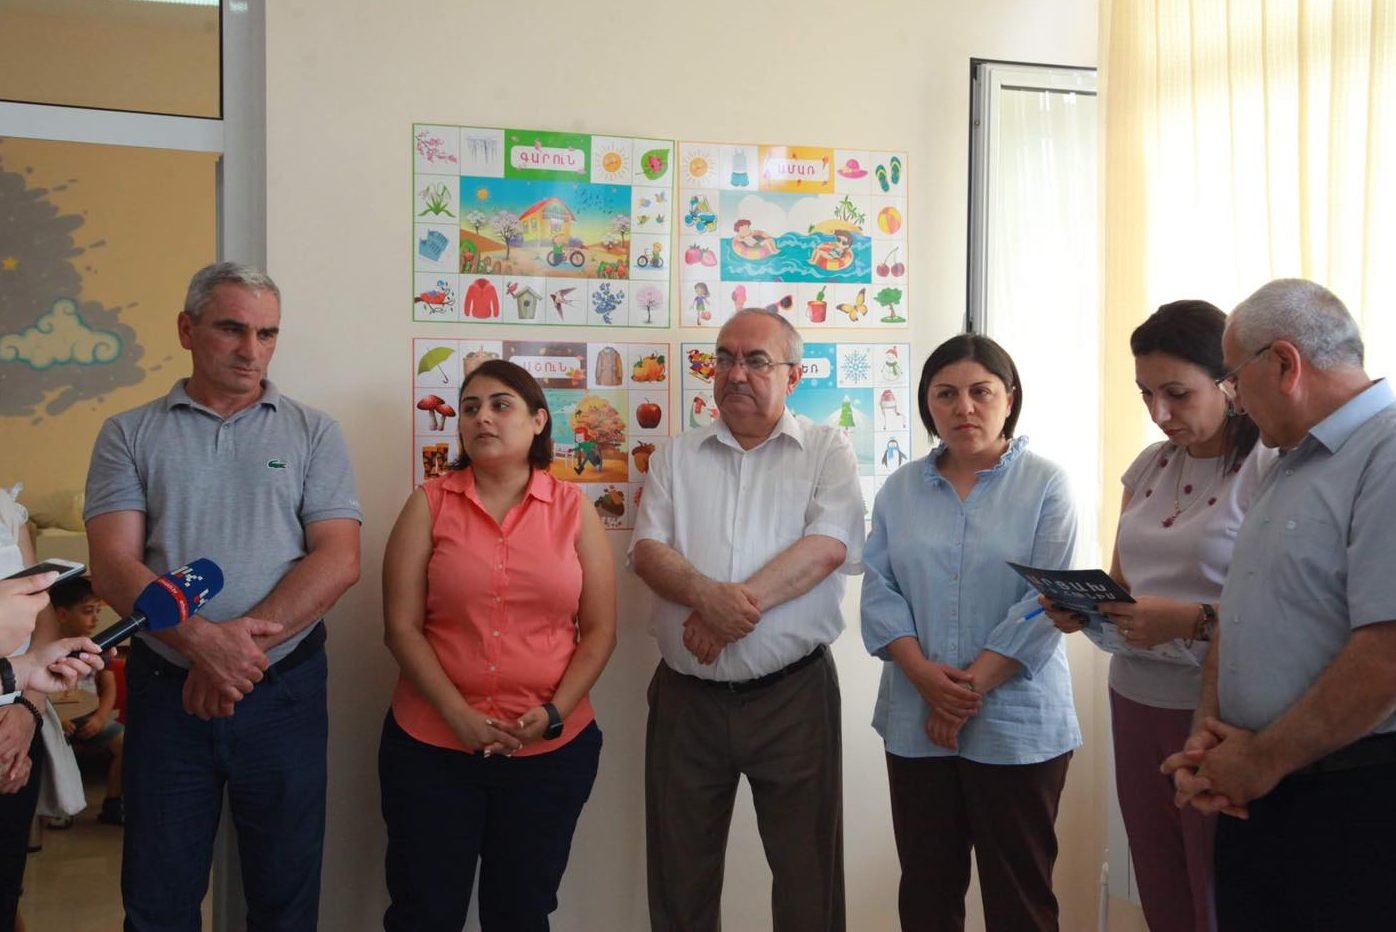 Հադրութի մանկապարտեզը վերաբացվել է Ստեփանակերտում. նախագահի խորհրդական